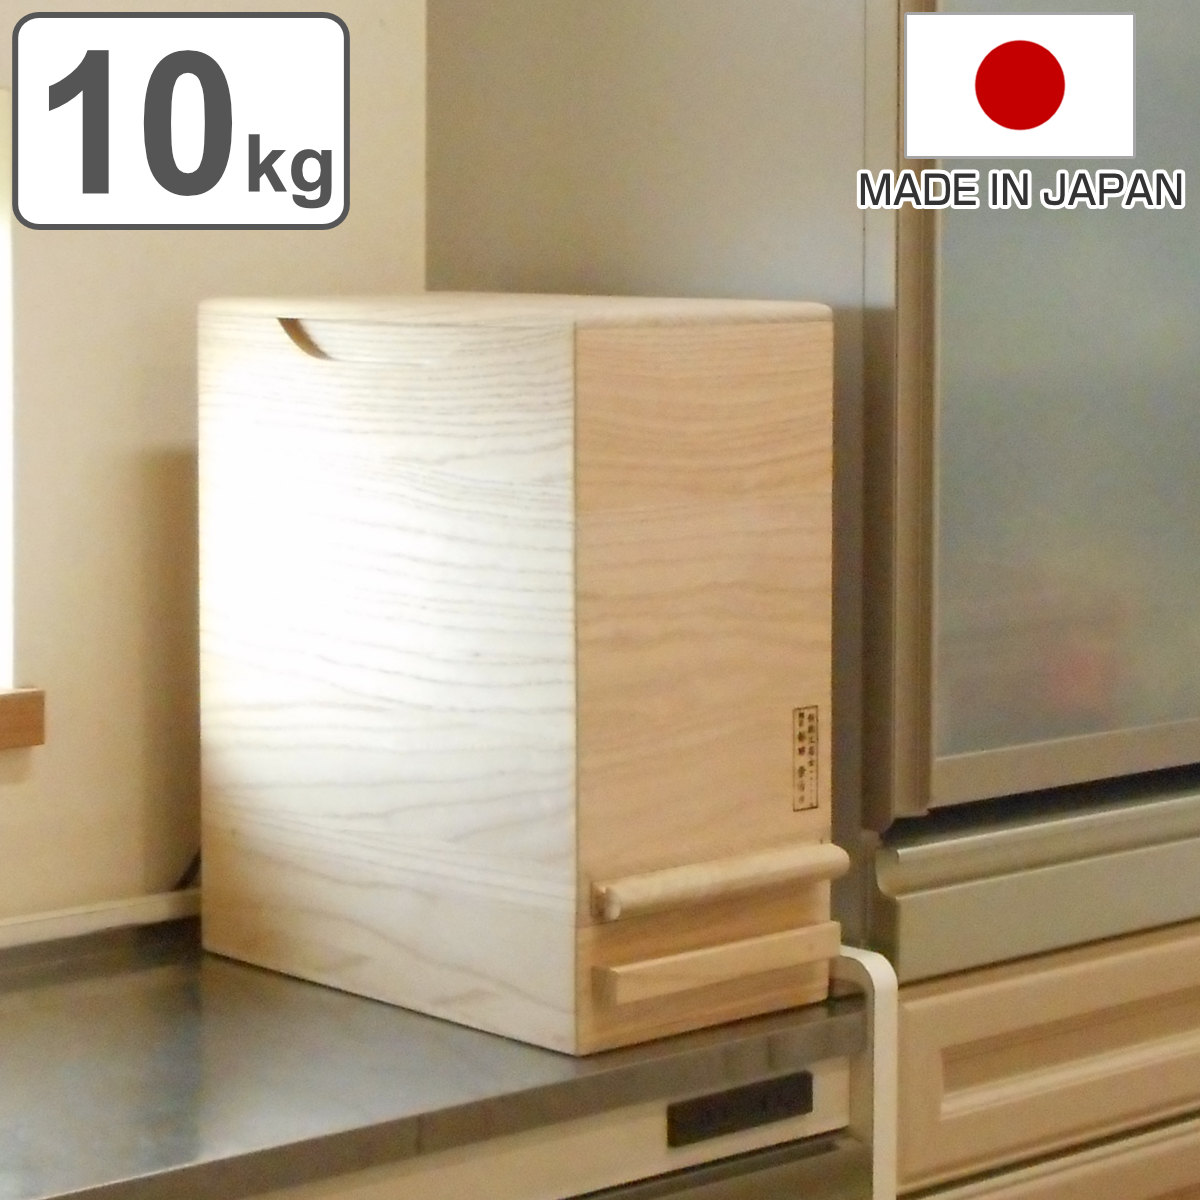 米びつ 計量機能付き 桐製 10kg 1合計量